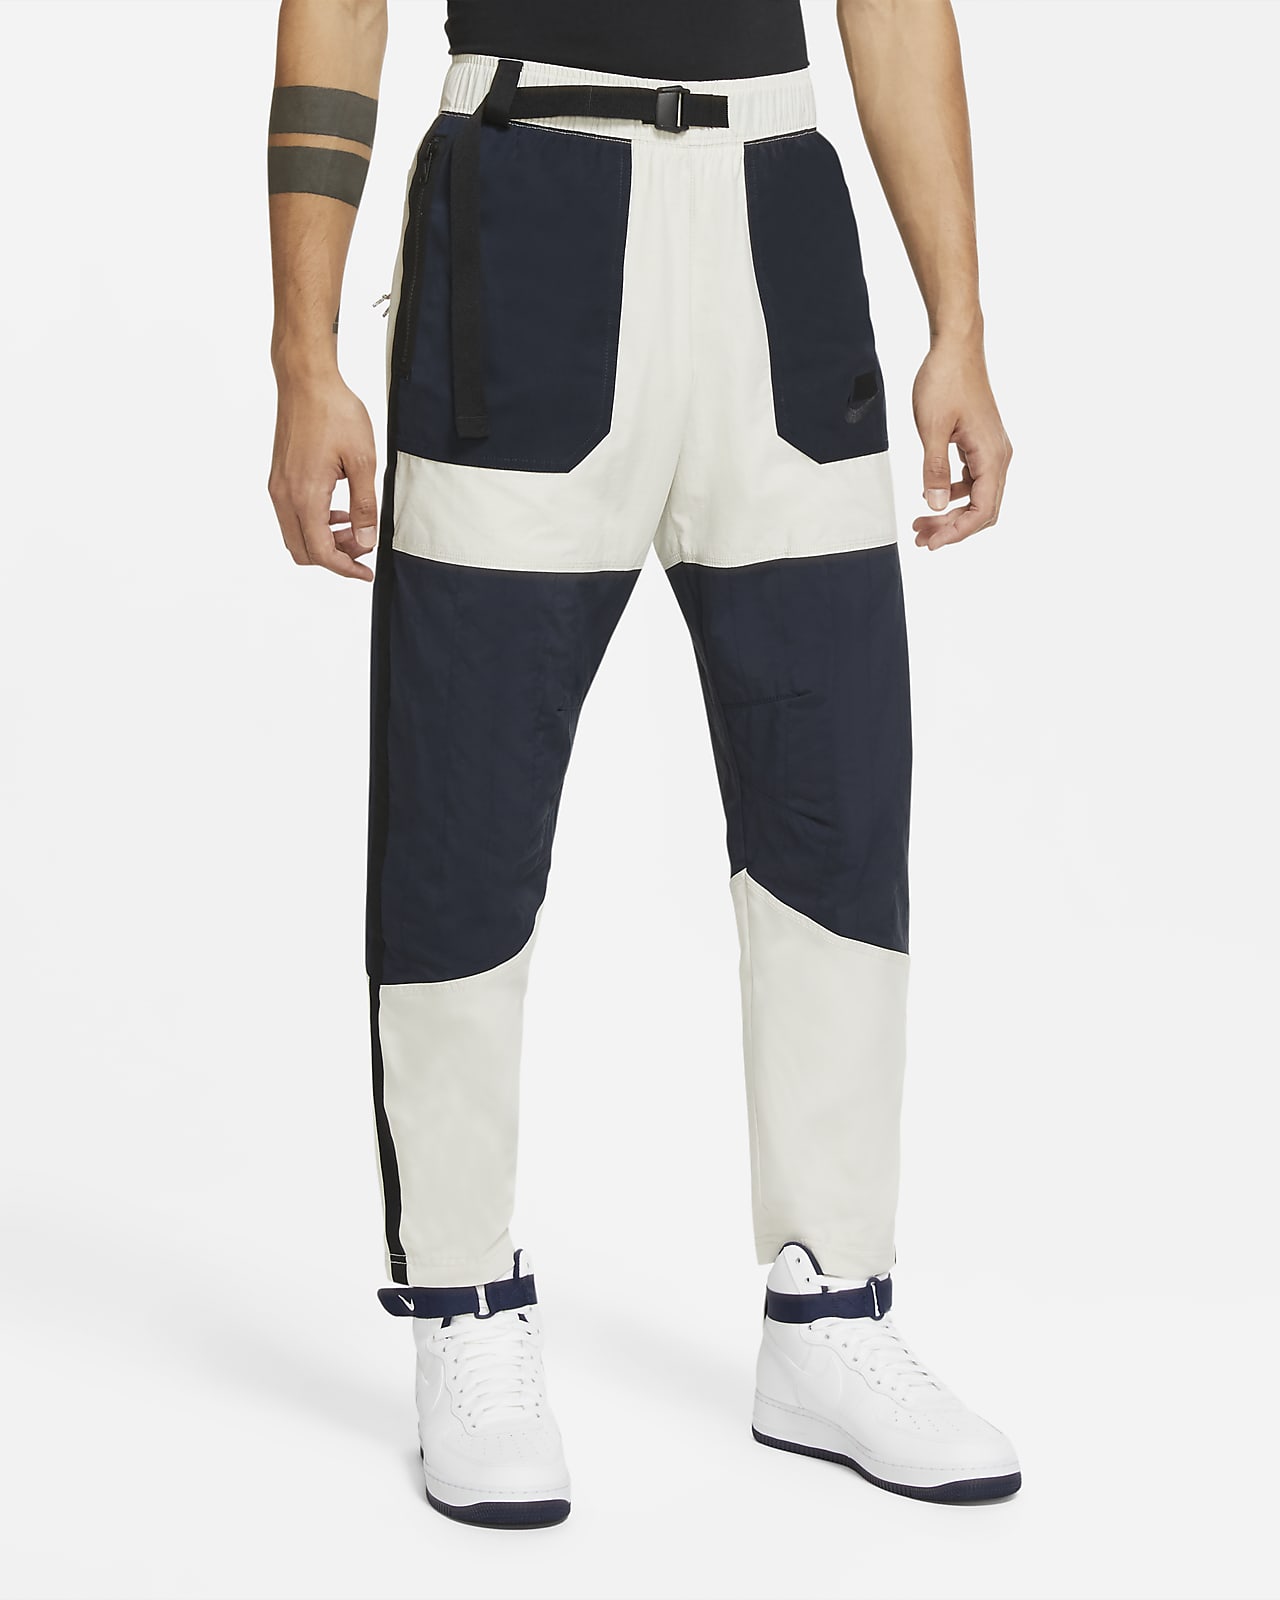 Nike Sportswear NSW Men's Woven Pants